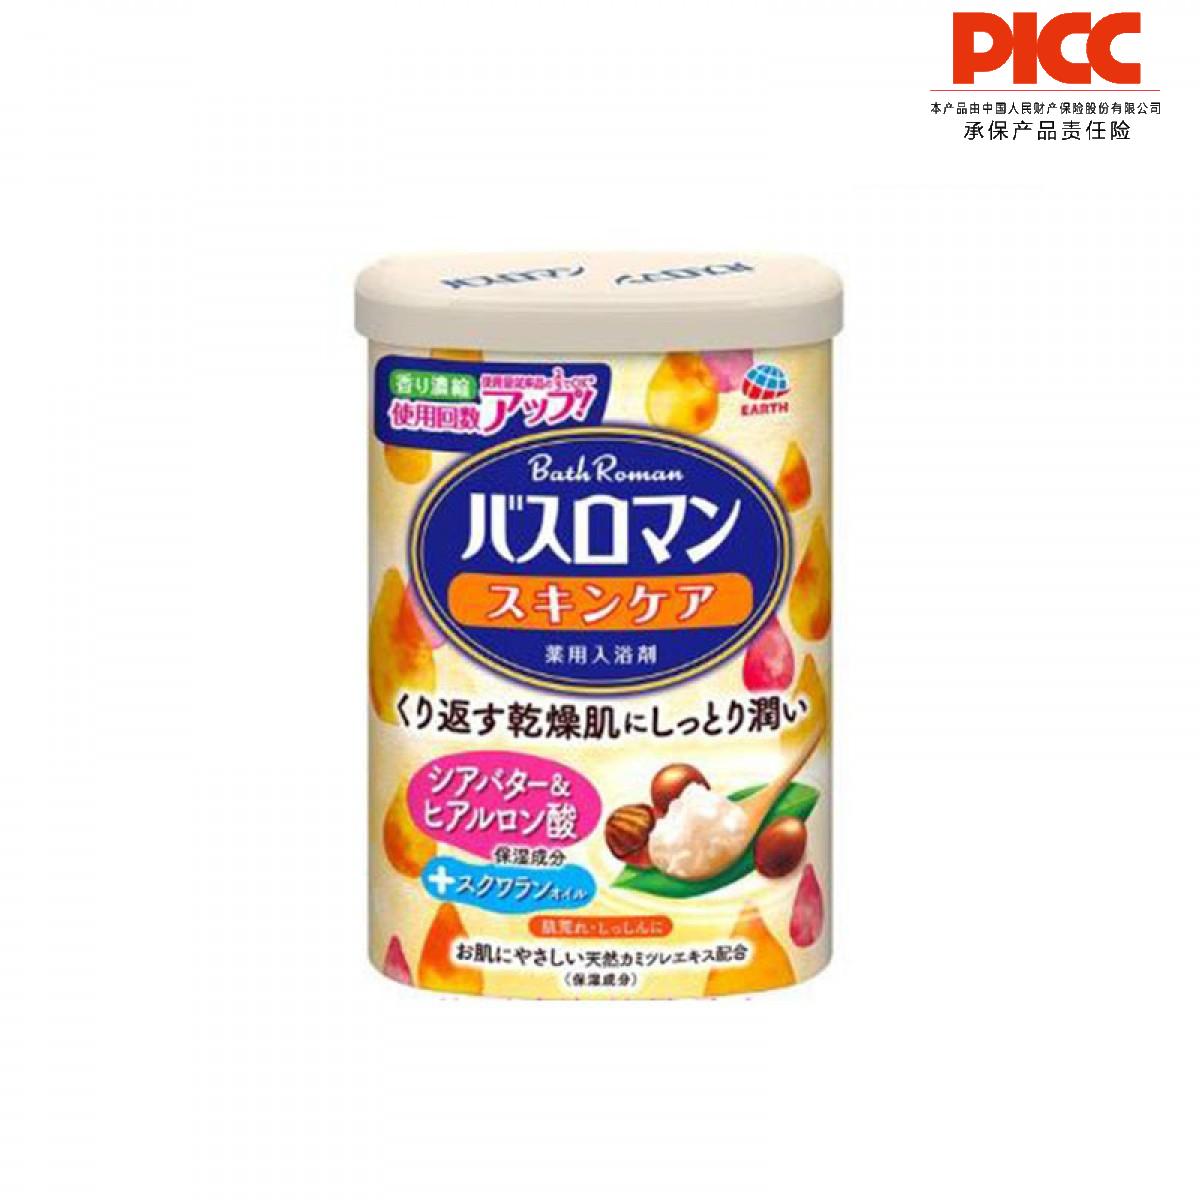 【保稅】日本巴斯洛漫浴鹽 乳木果油600G